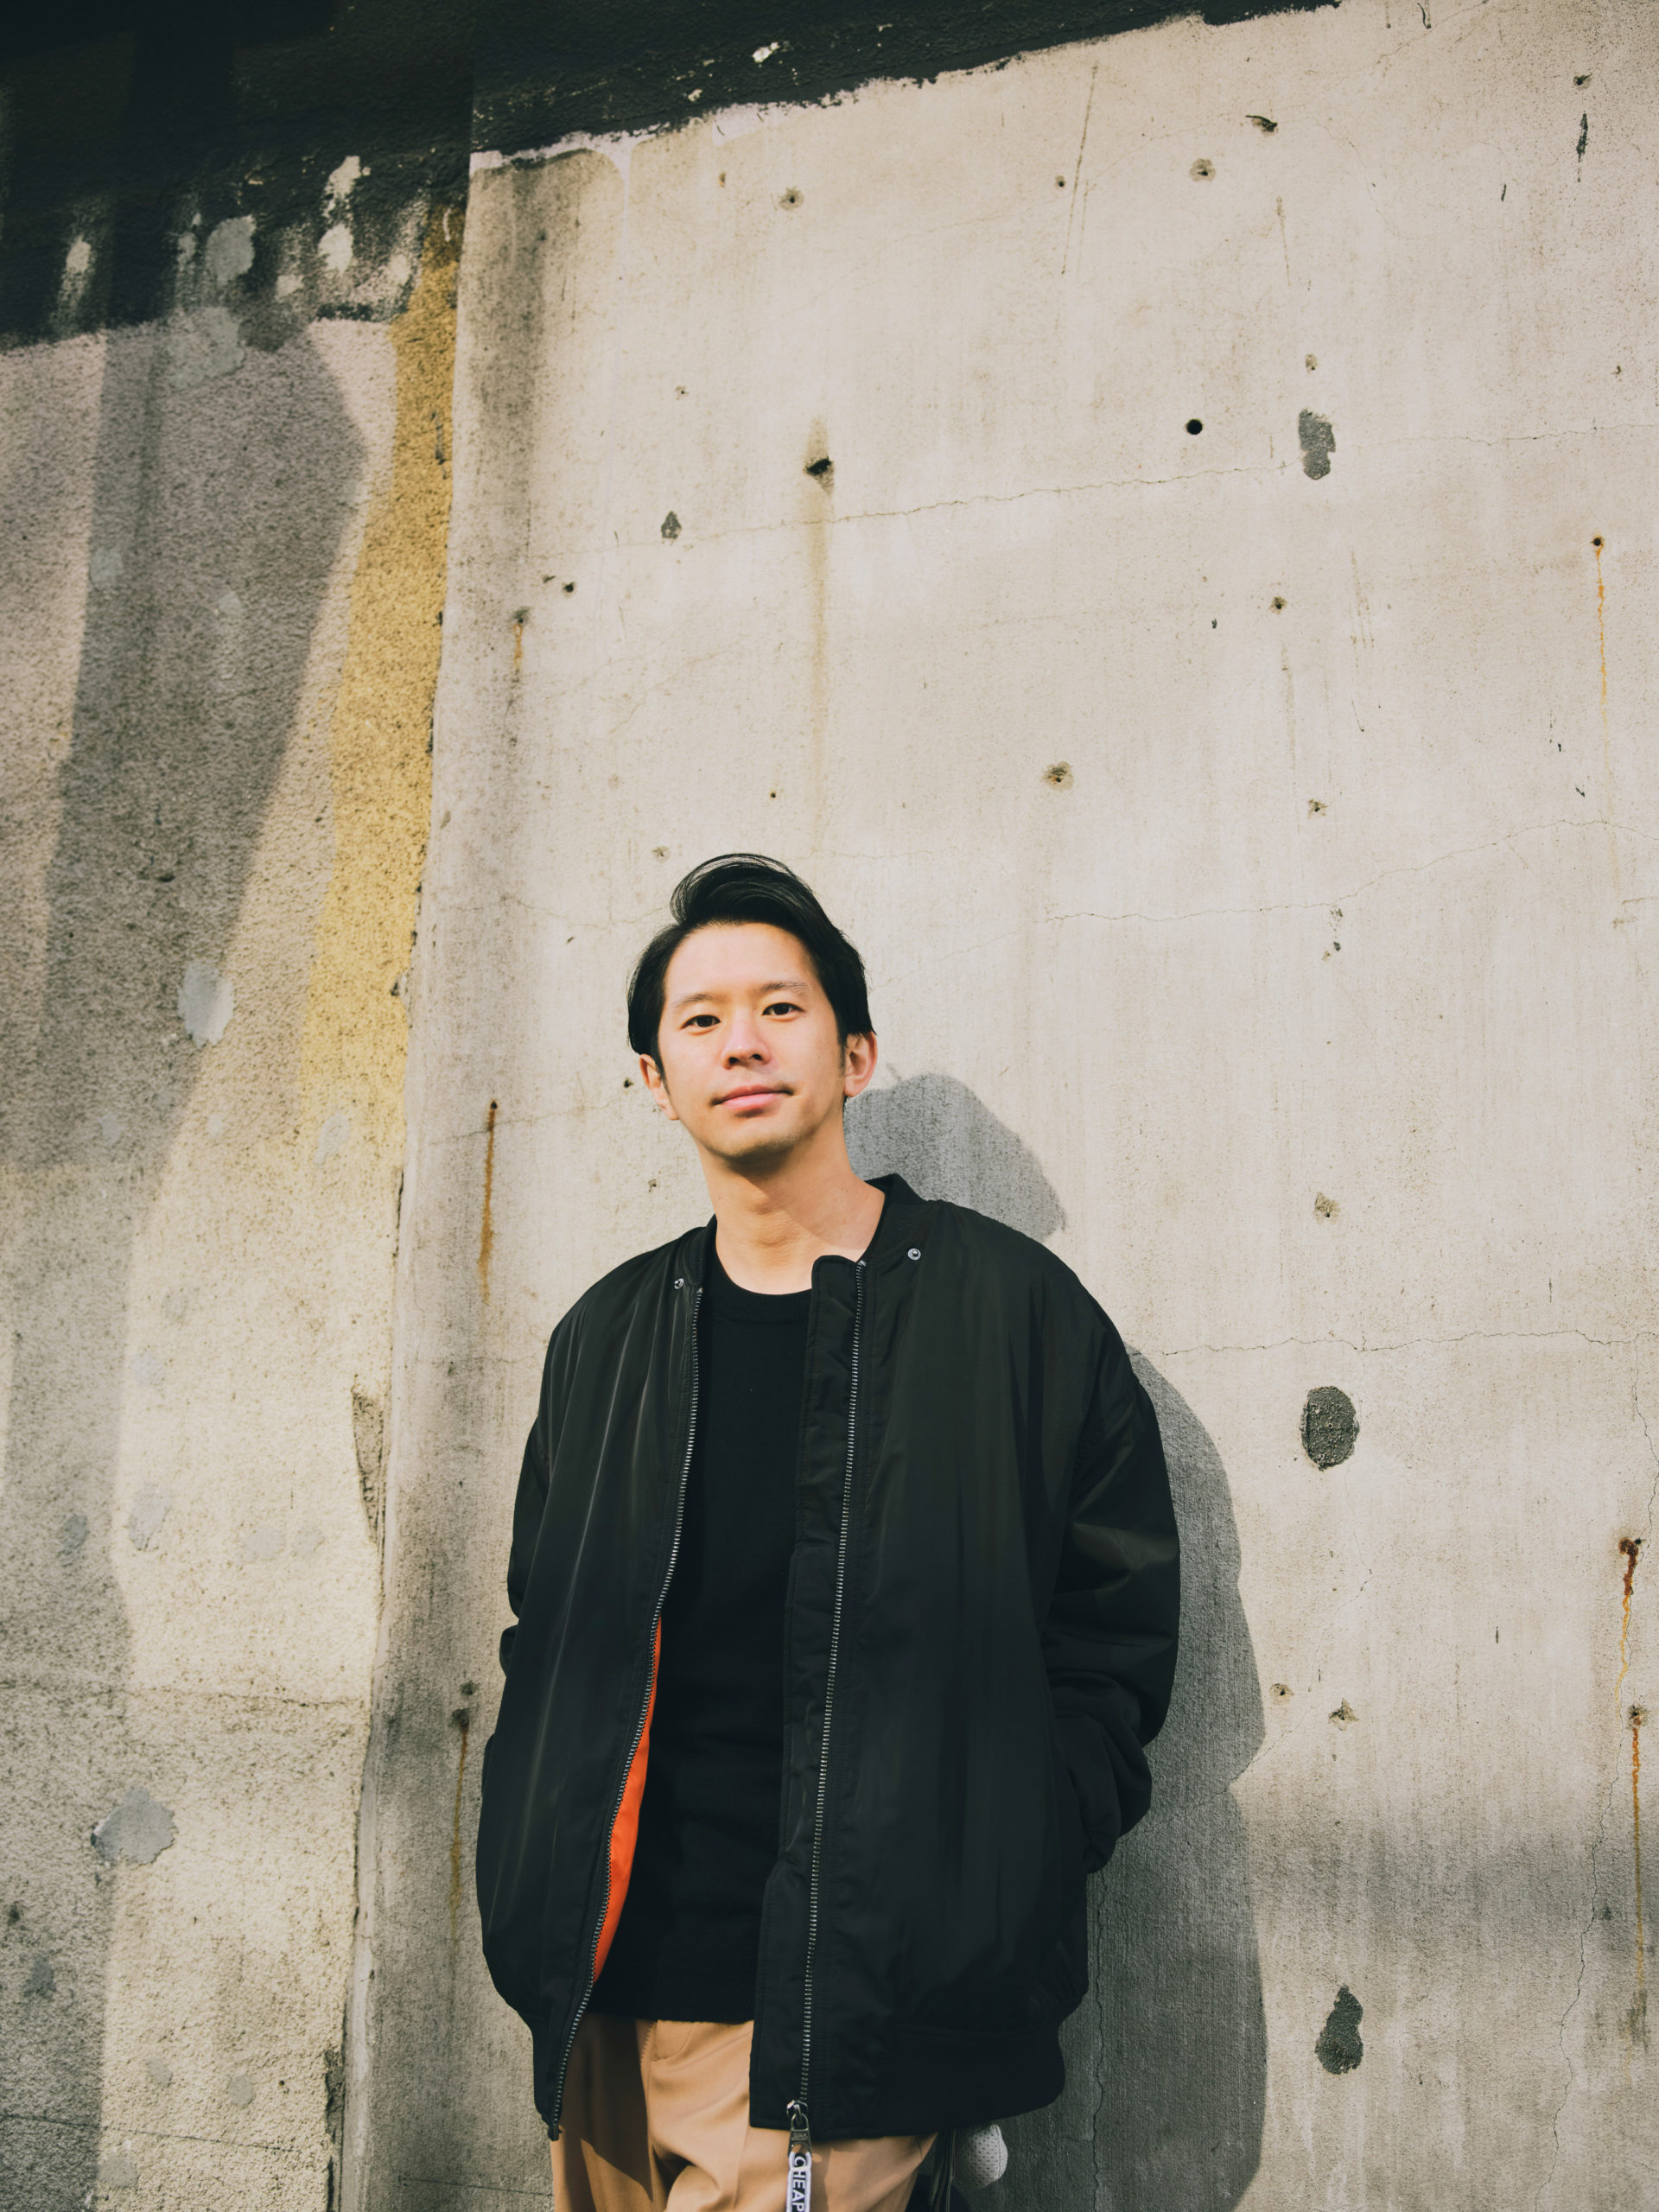 シンガーソングライター Keishi Tanakaが音で刻んだ2020年の光景 Tokion